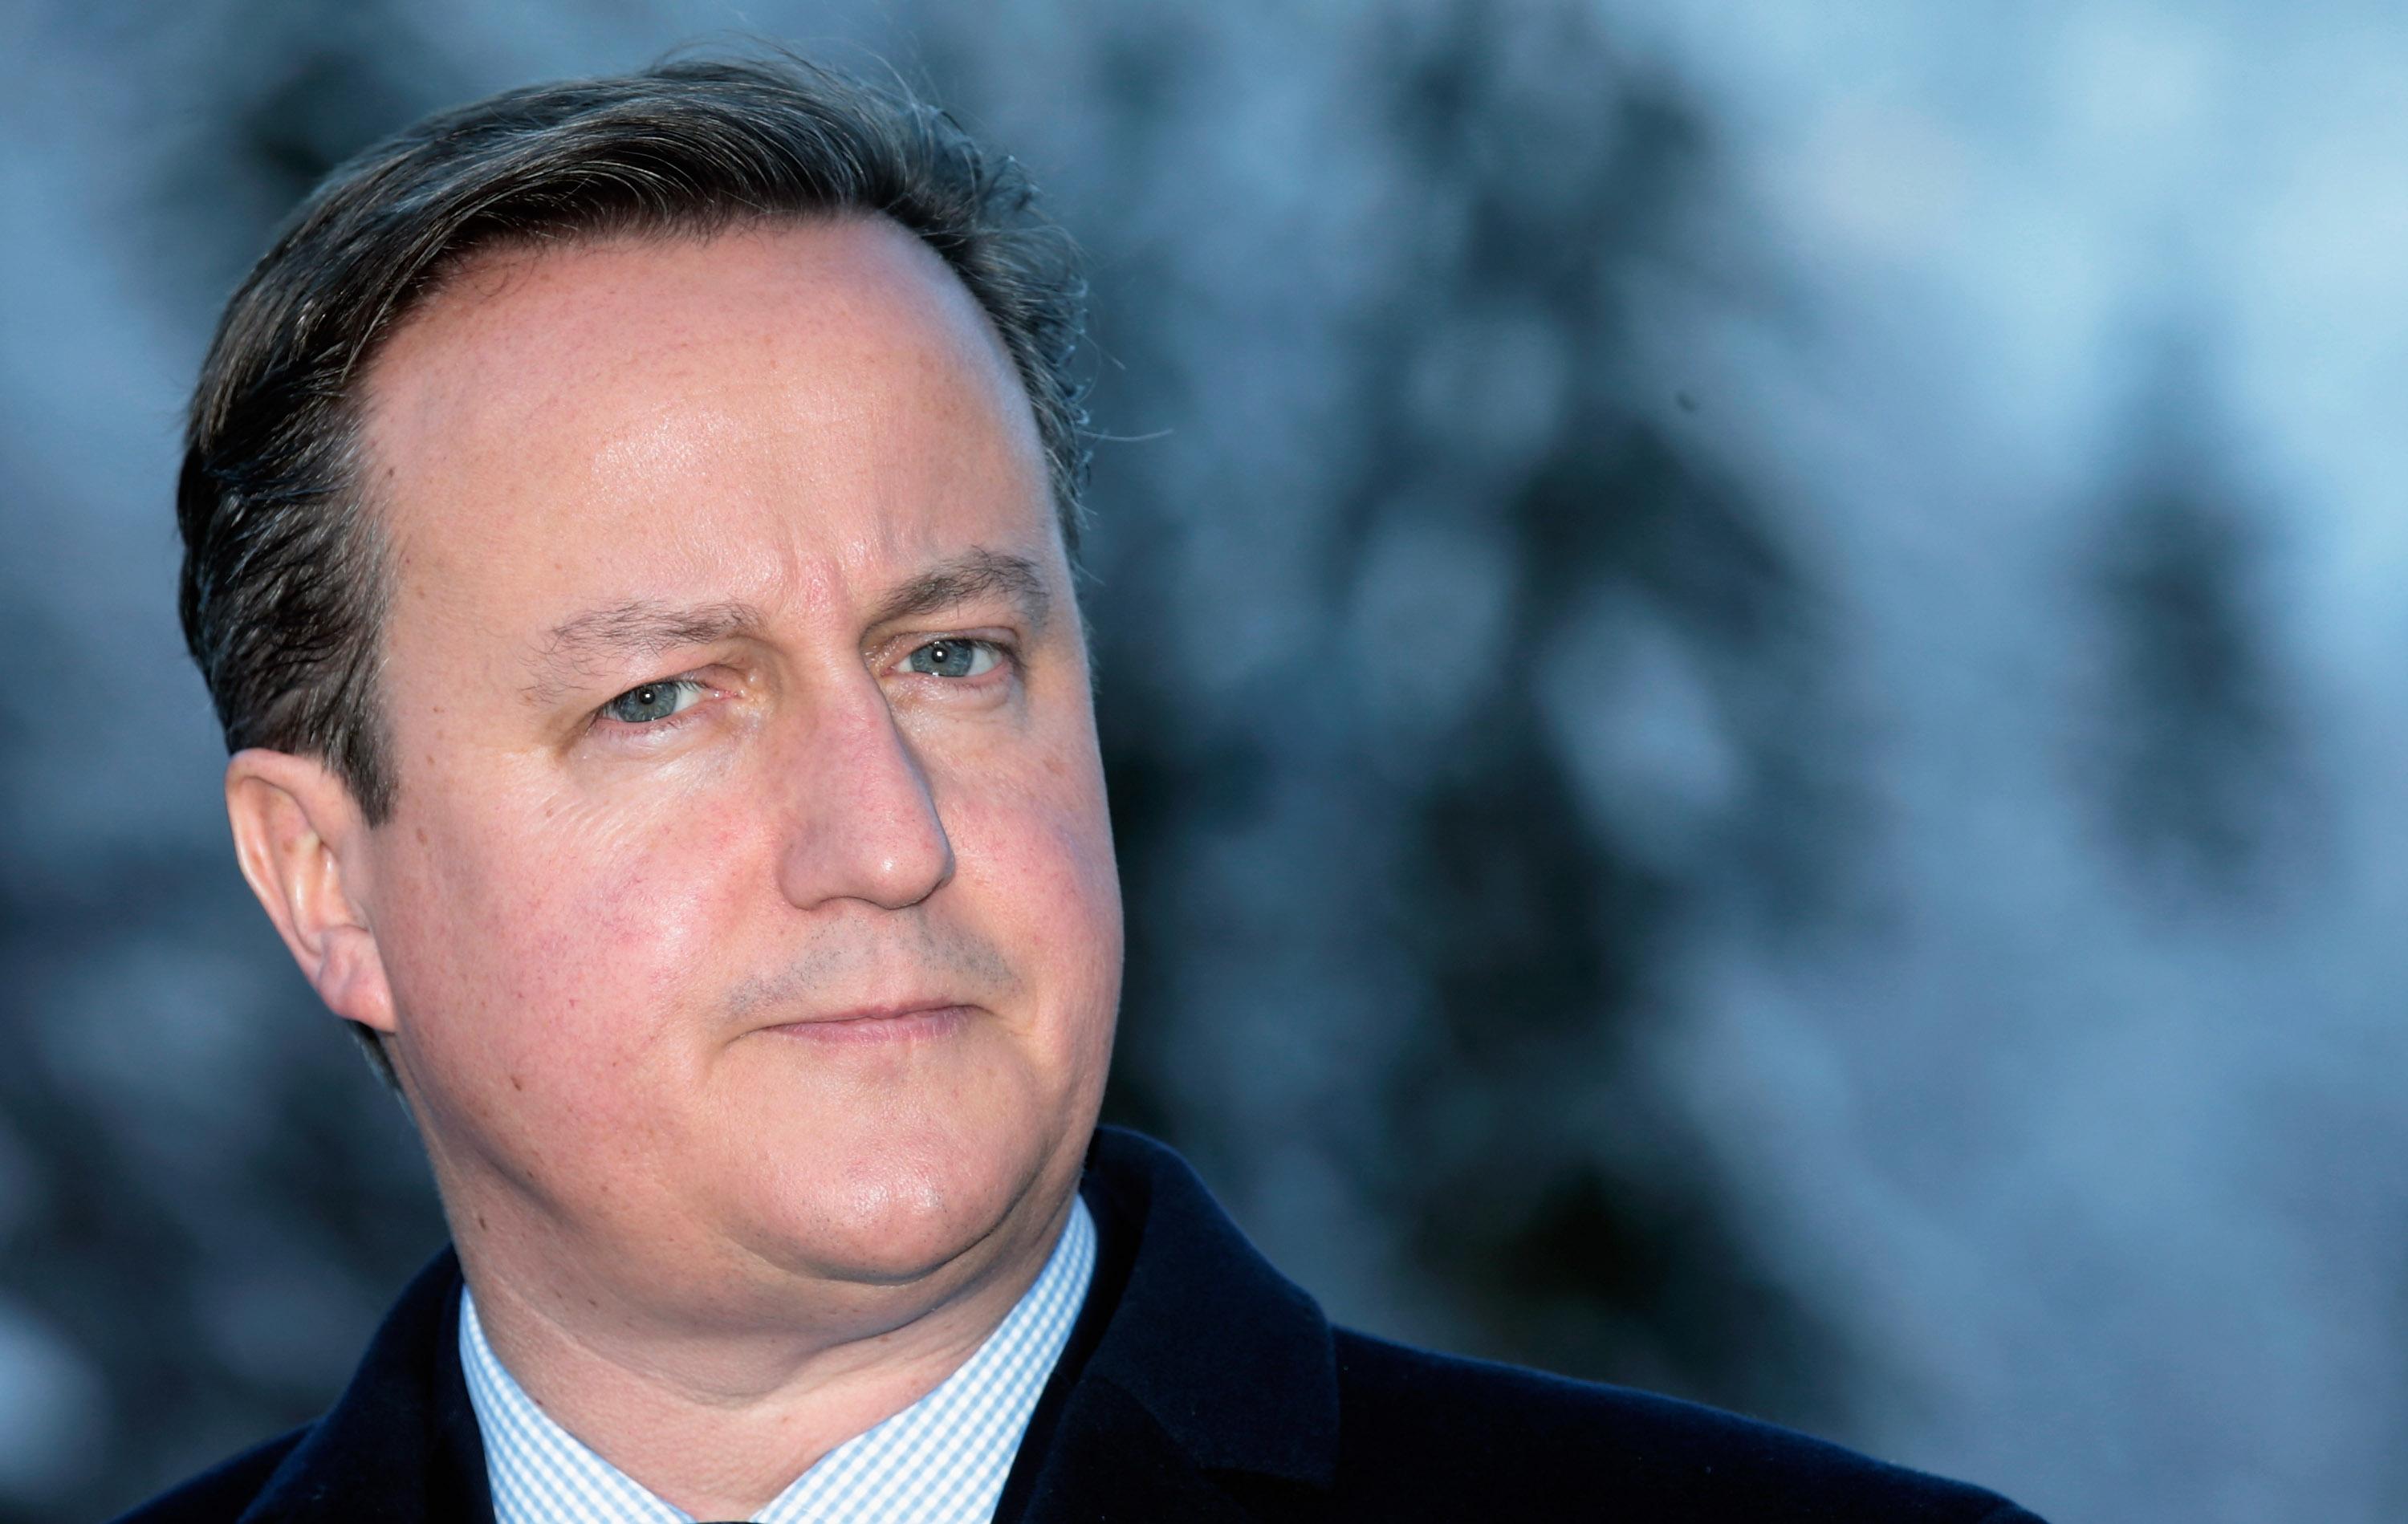 David Cameron ska föra diskussioner med EU om ändringar i sitt lands EU-medlemskap. (Foto: Johannes Simon /Getty Images)